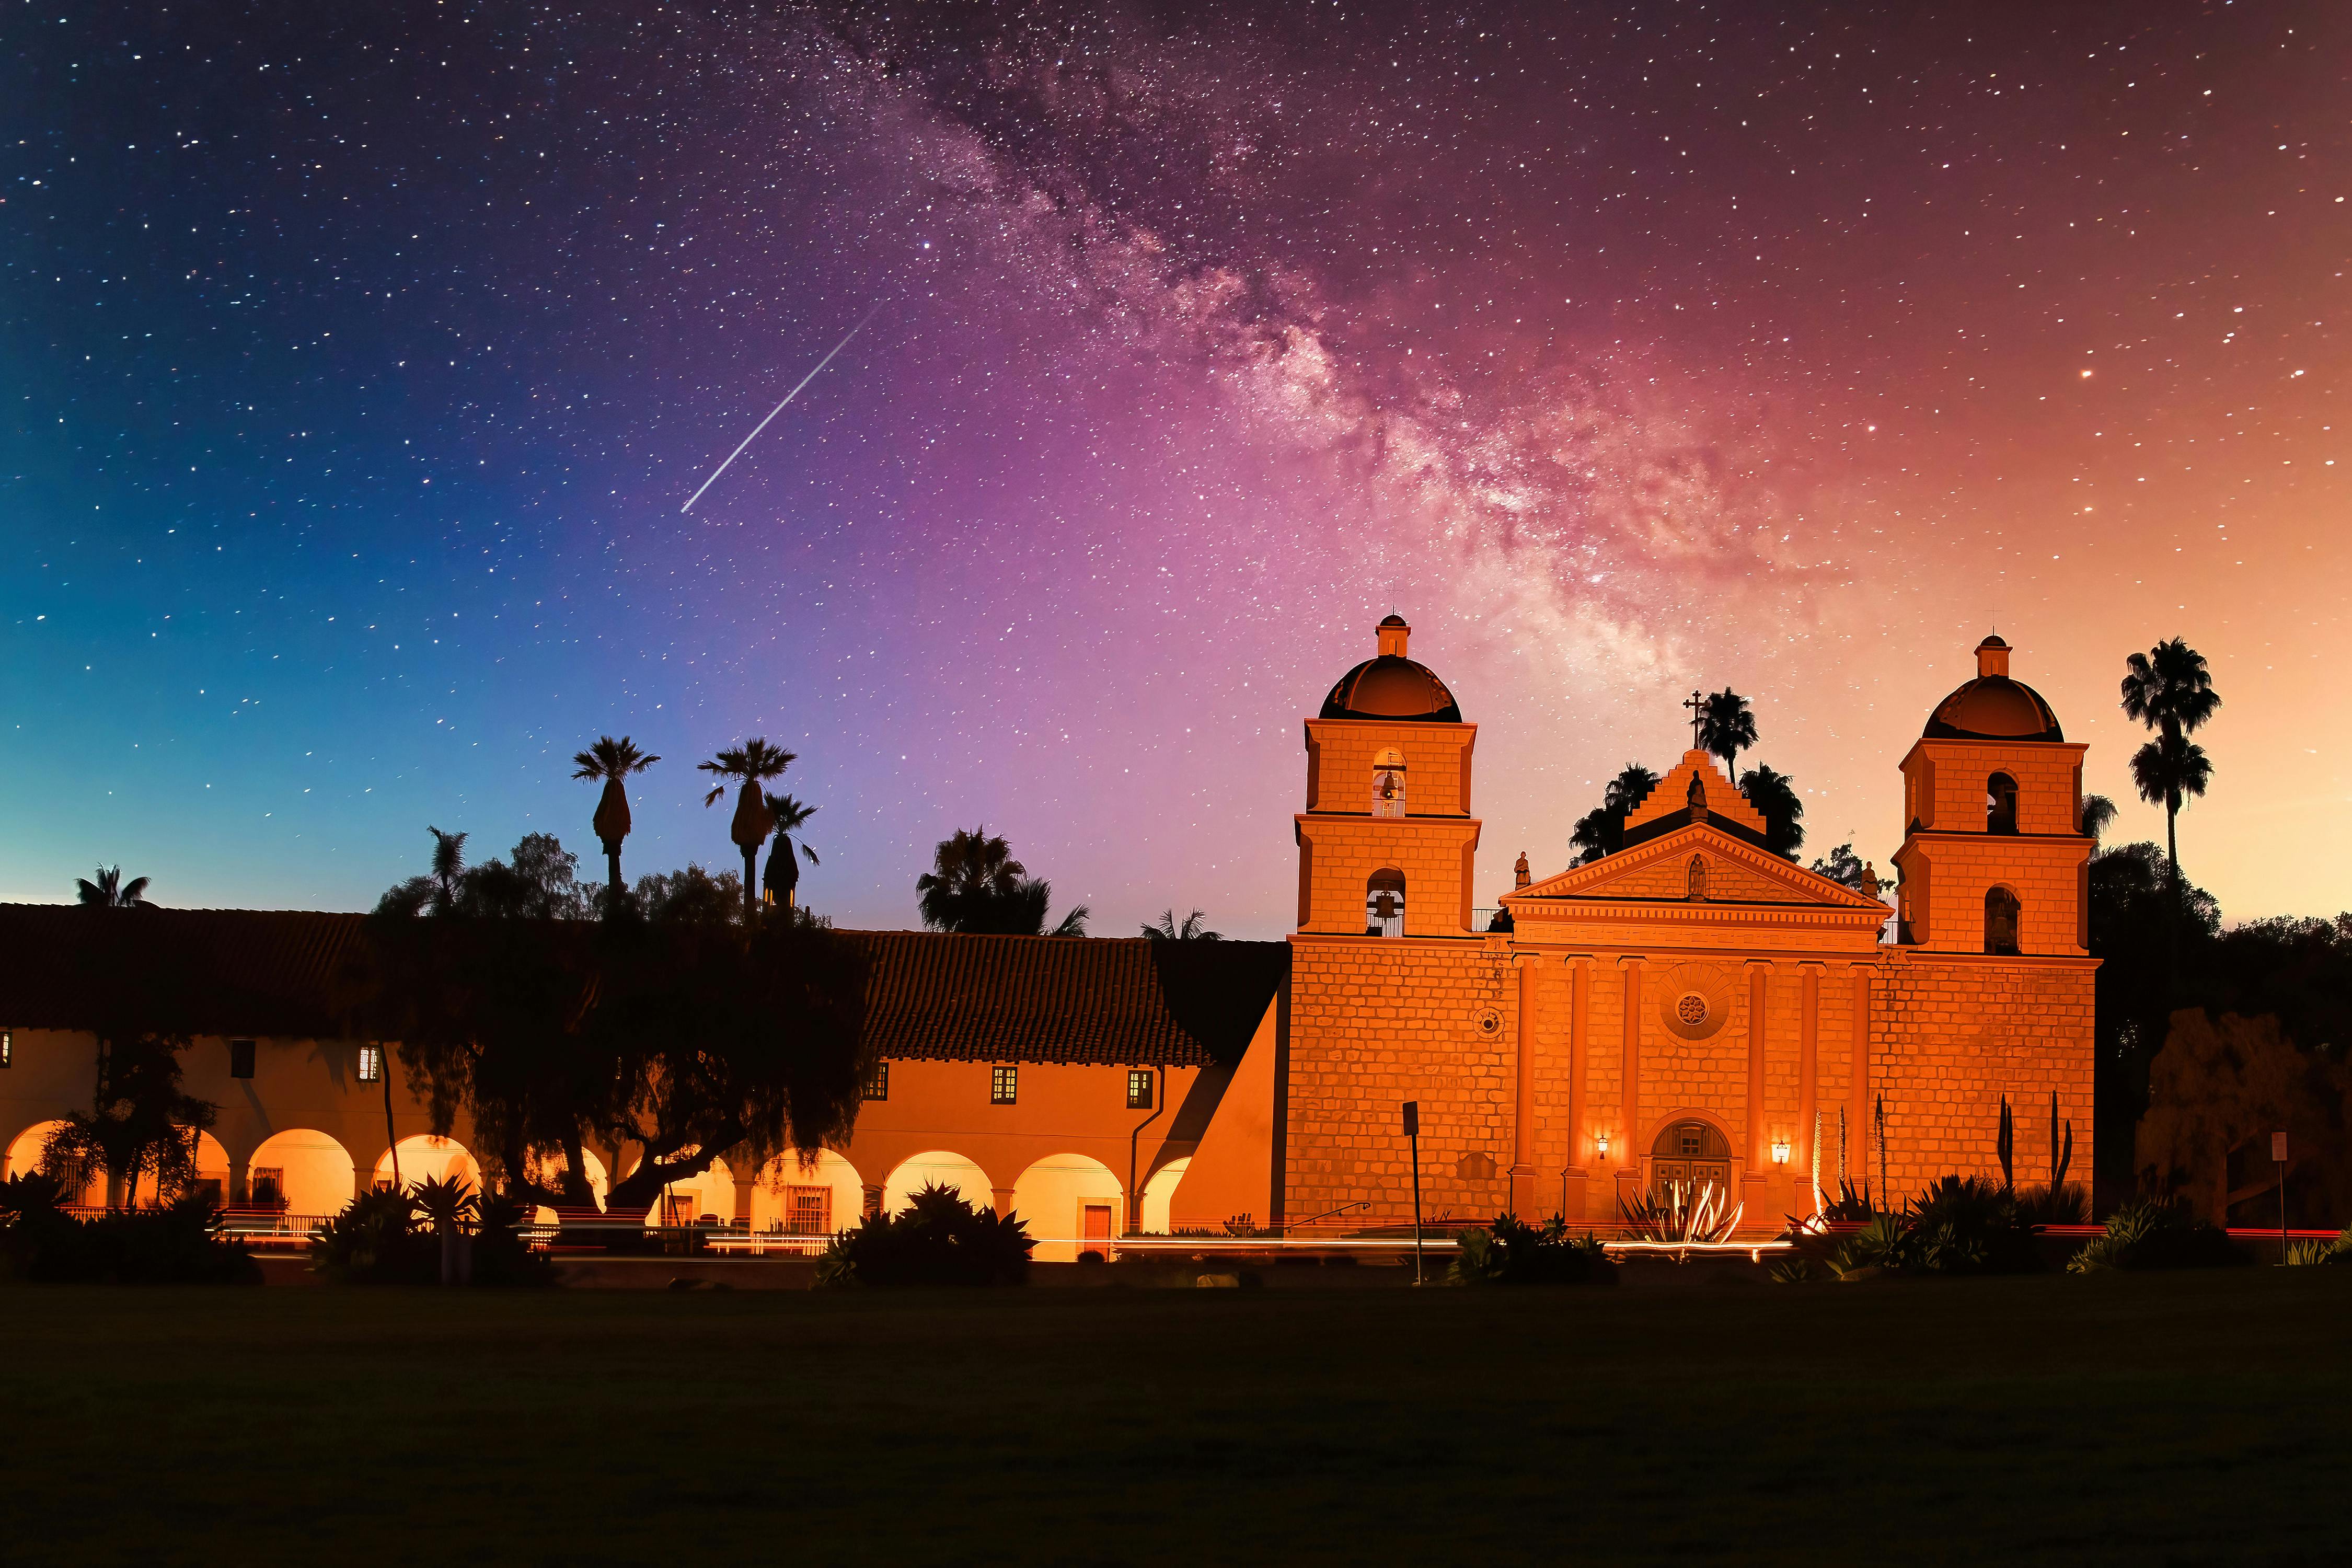 Visit the Santa Barbara Mission on your PCH trip to Santa Barbara